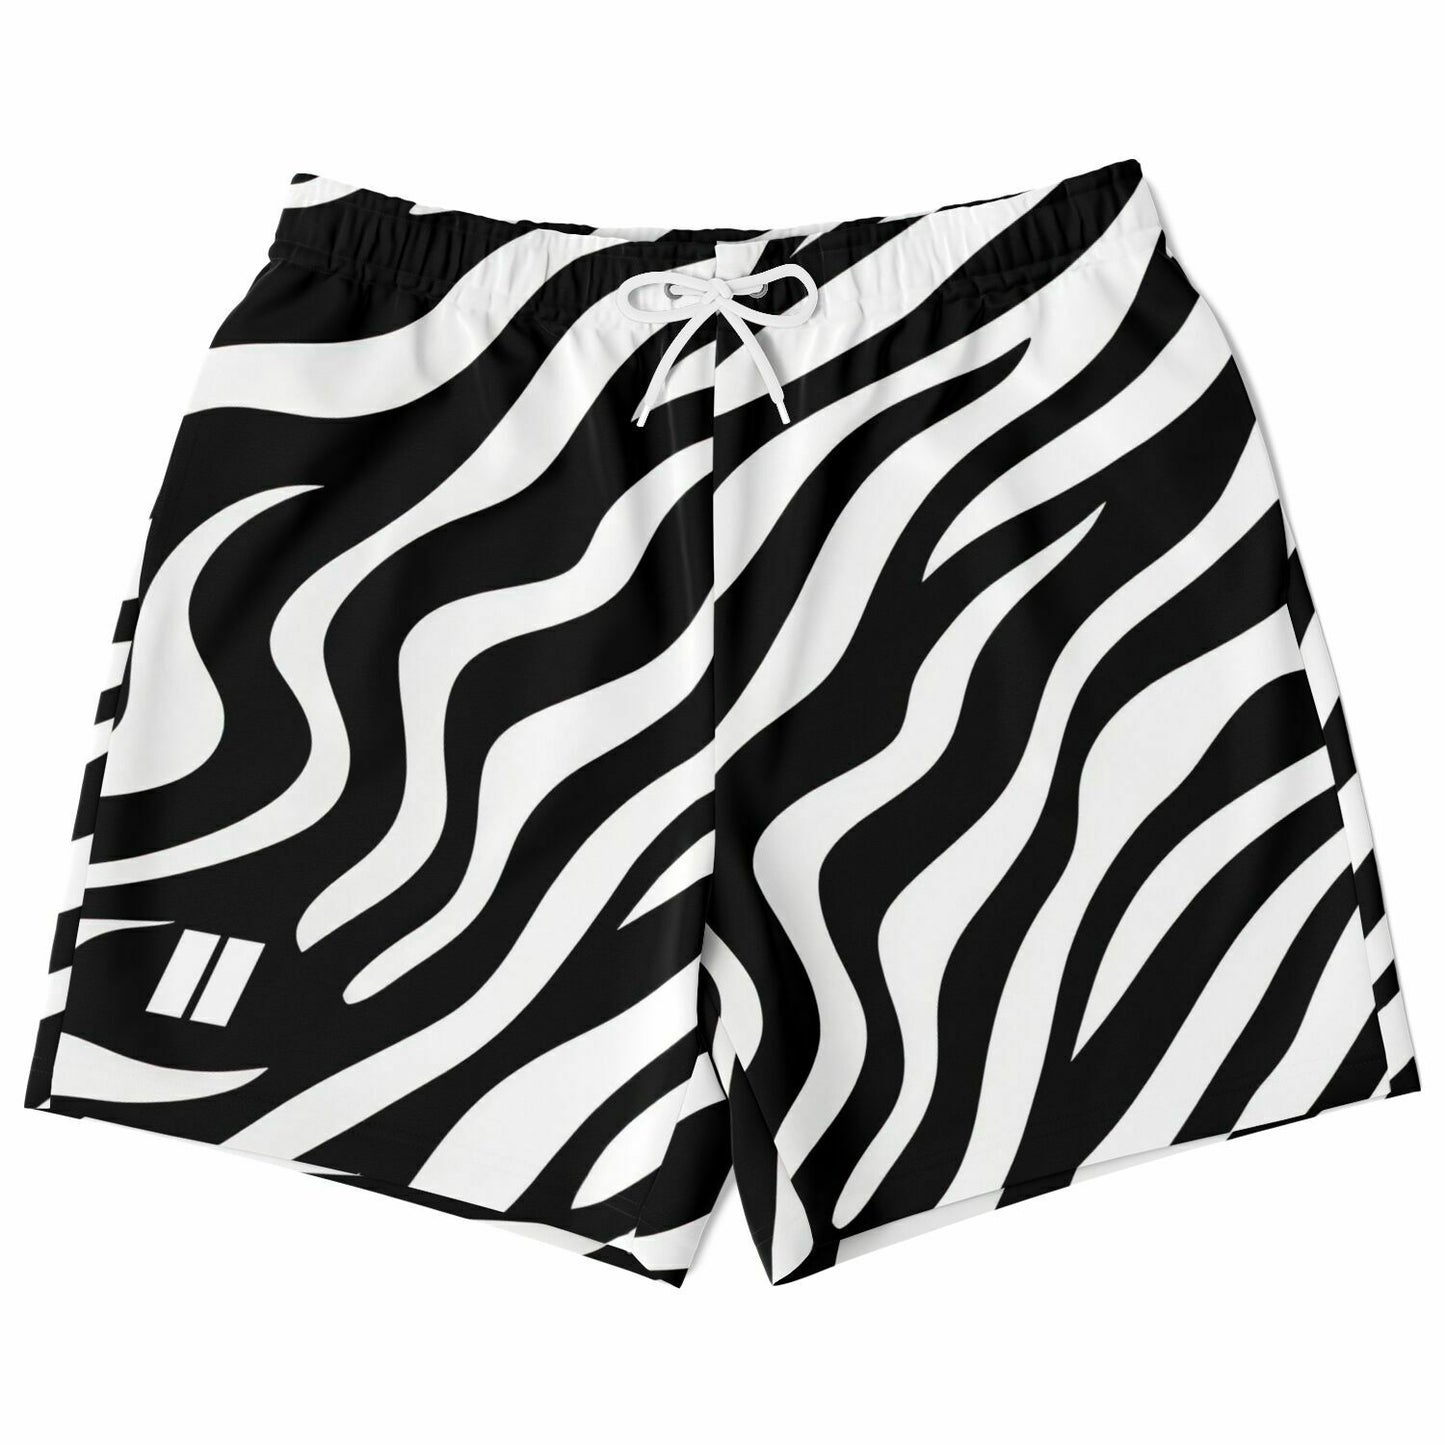 PRIIME Zebra Men's Fashion Shorts